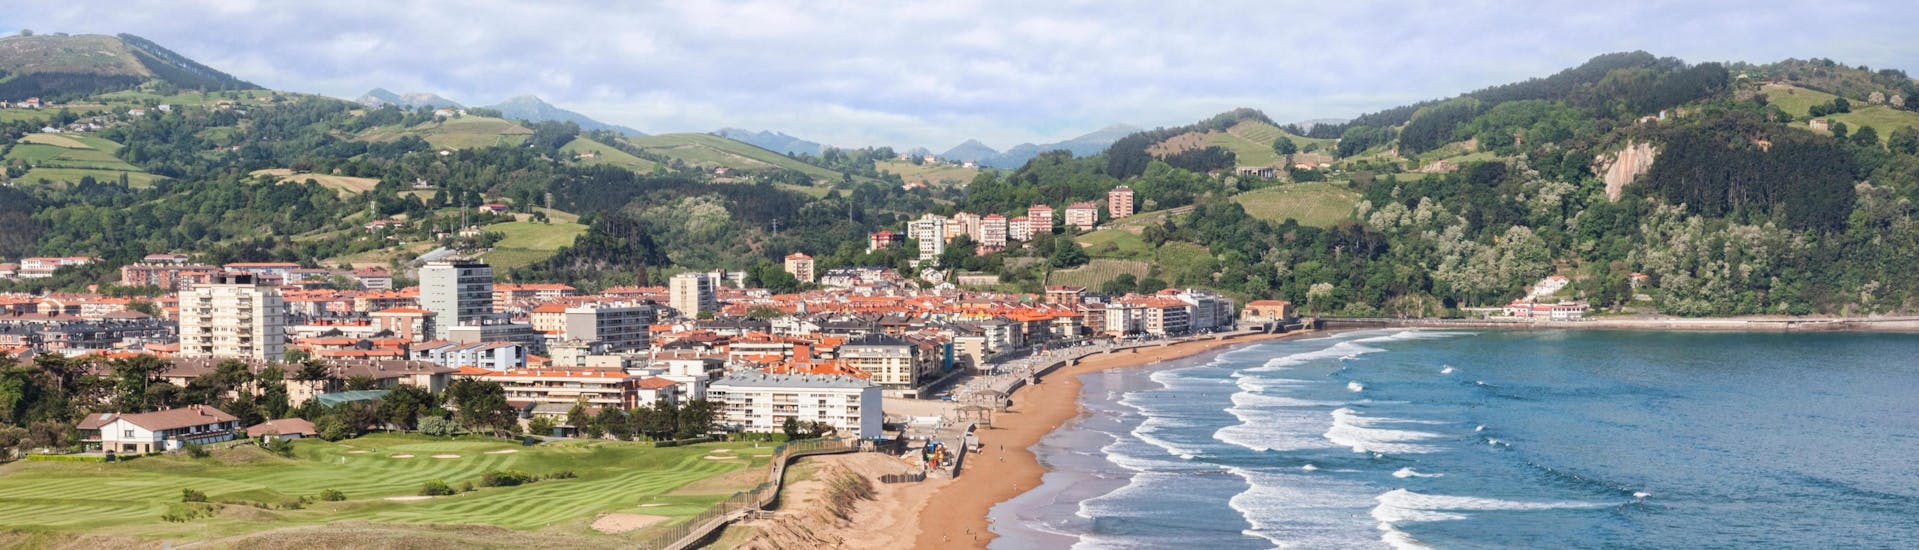 Ein Blick über den Strand in Zarautz, einem beliebten Ort zum Surfen im Baskenland in Spanien.